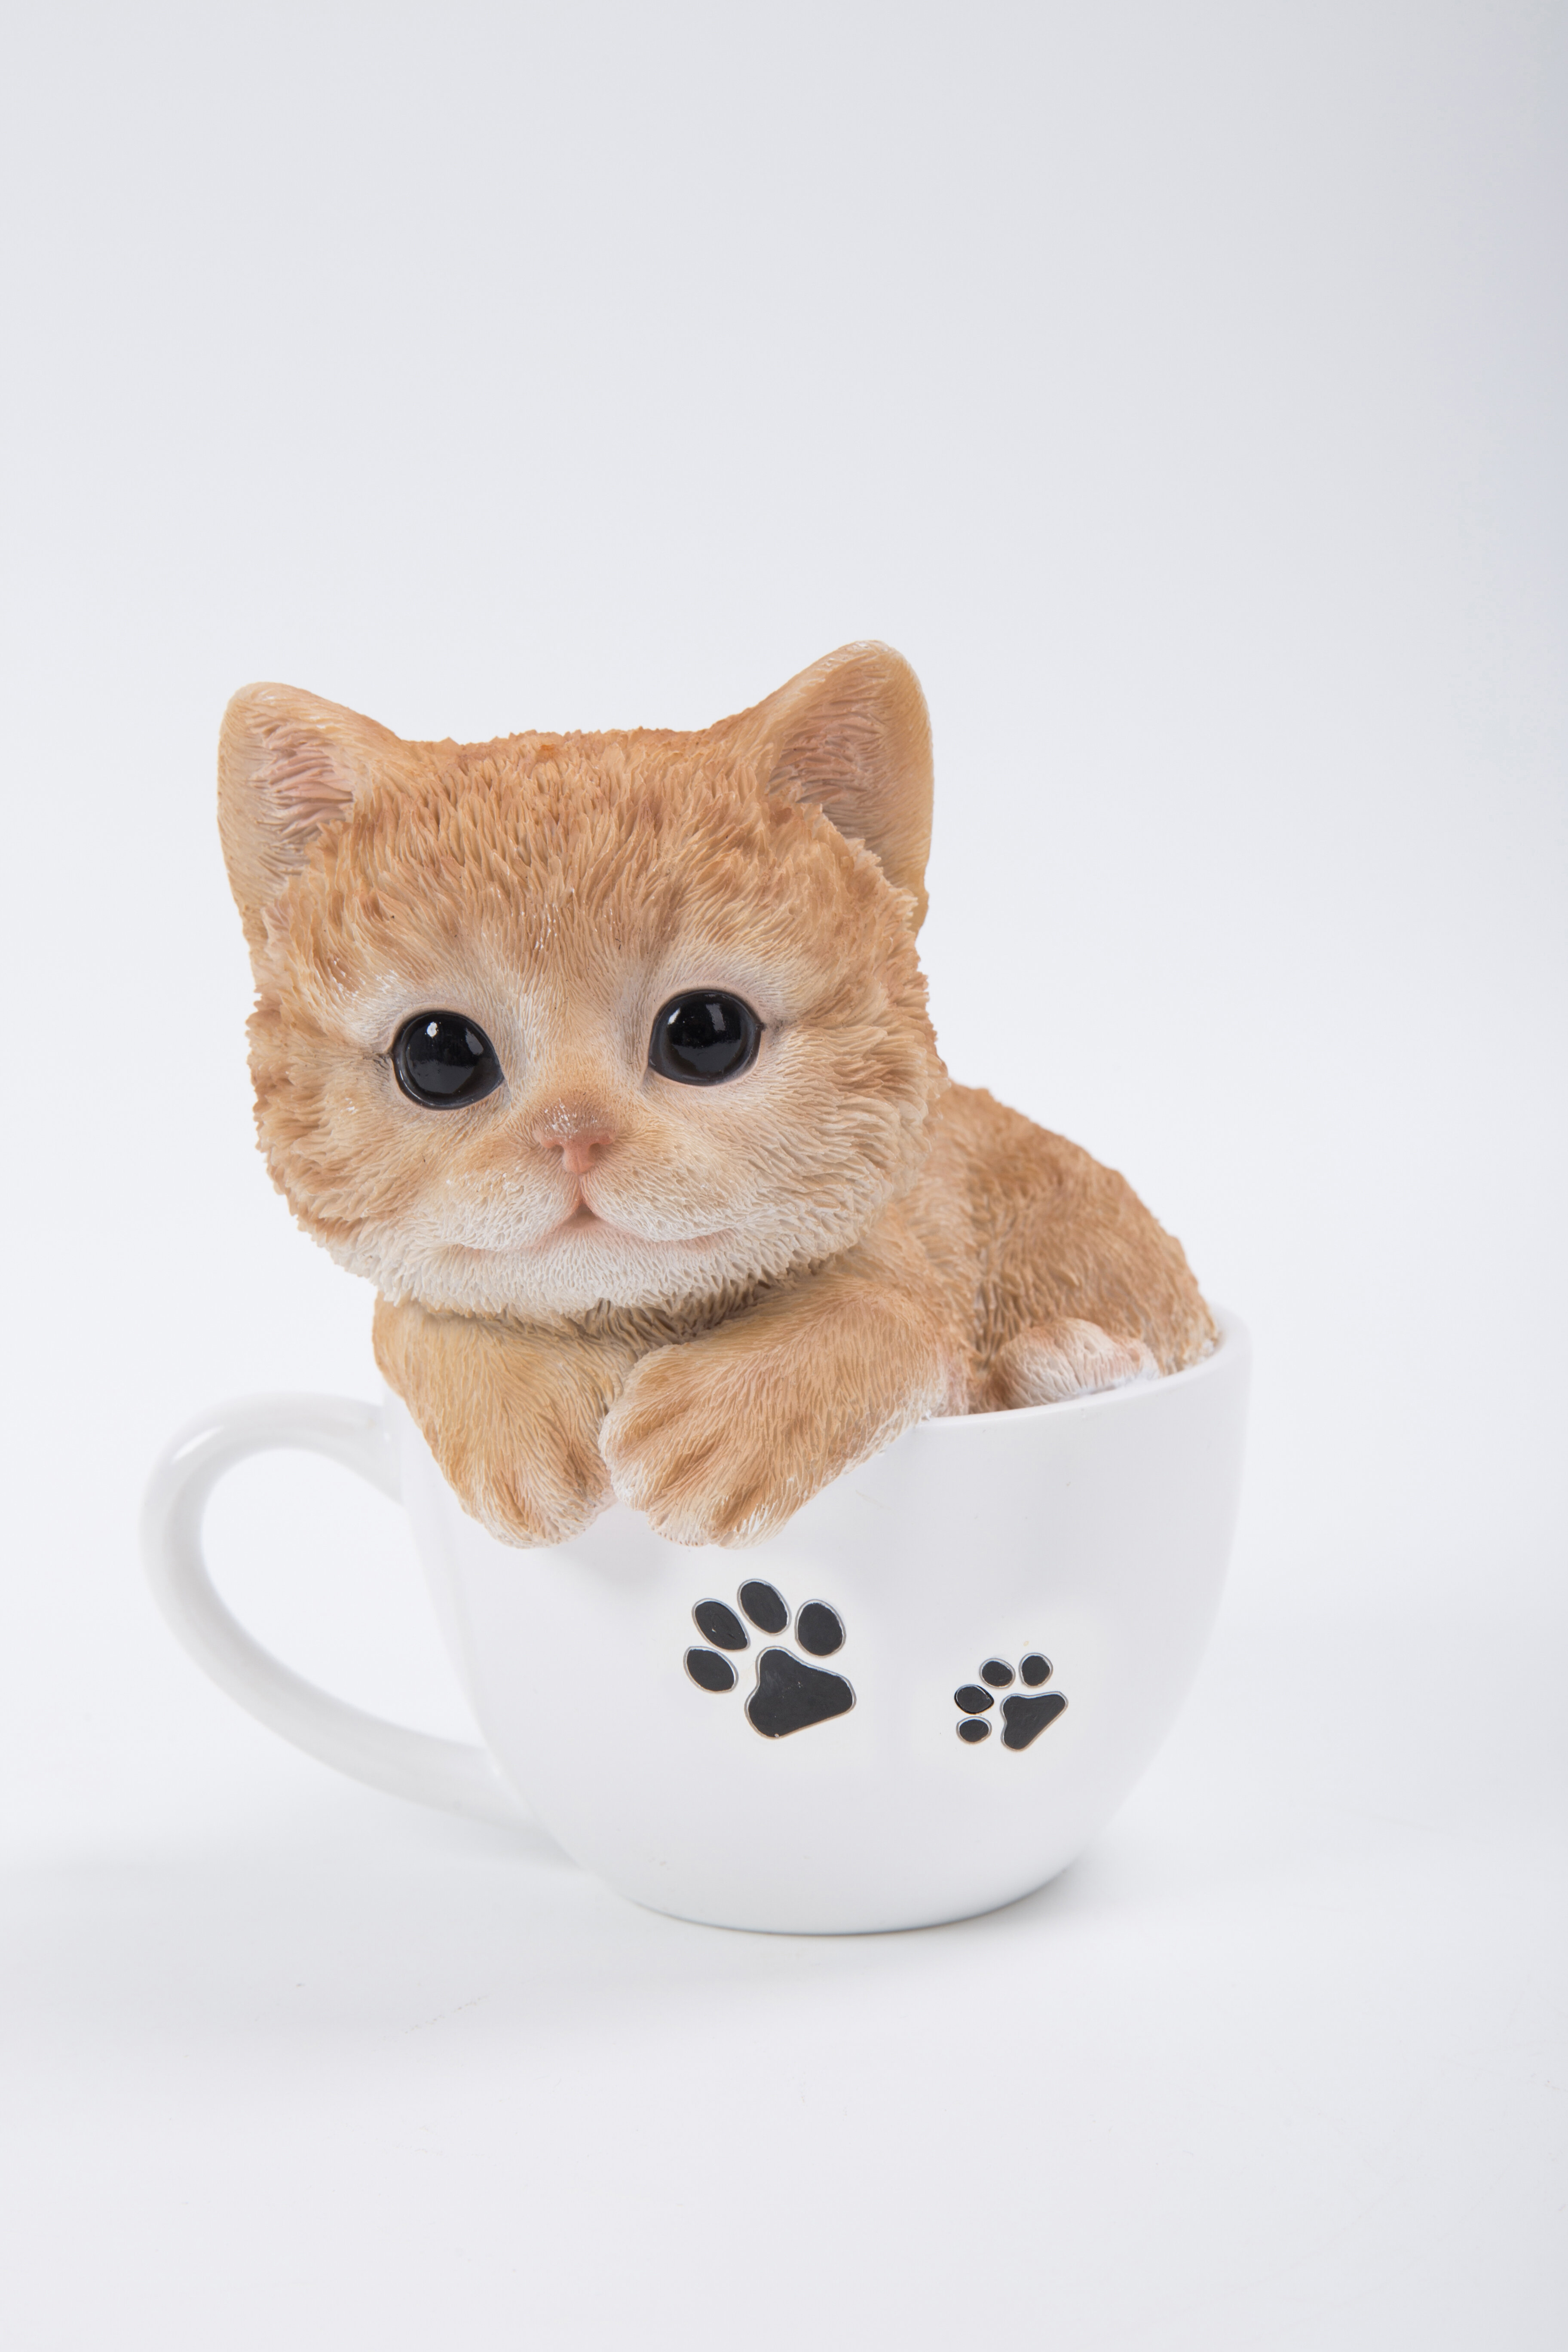 teacup kitten